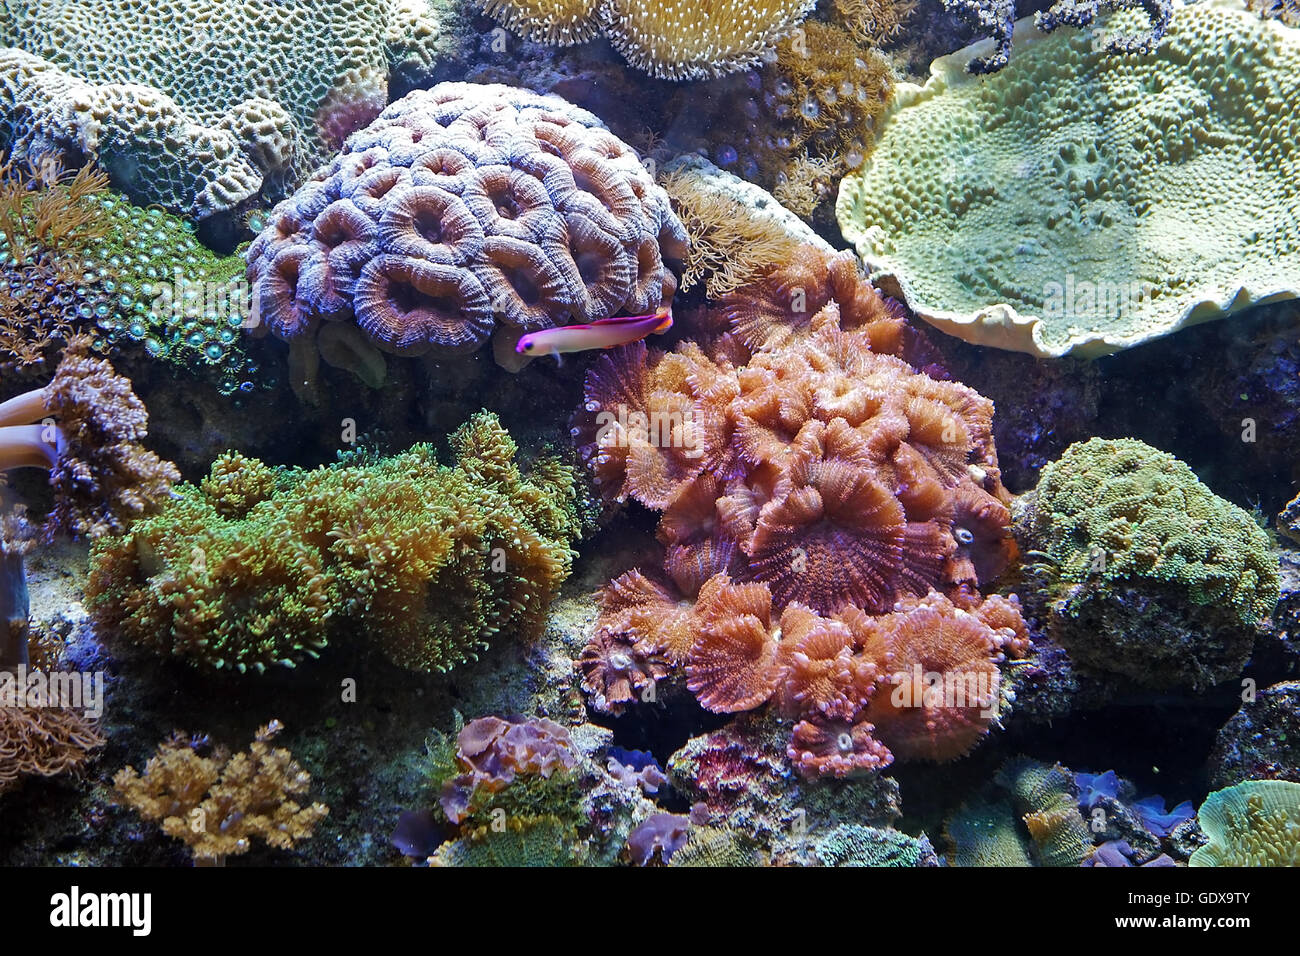 Belle photo d'algues et les récifs coralliens colorés de plantes aquatiques dans l'aquarium de Barcelone, Espagne. Le monde sous-marin. Banque D'Images